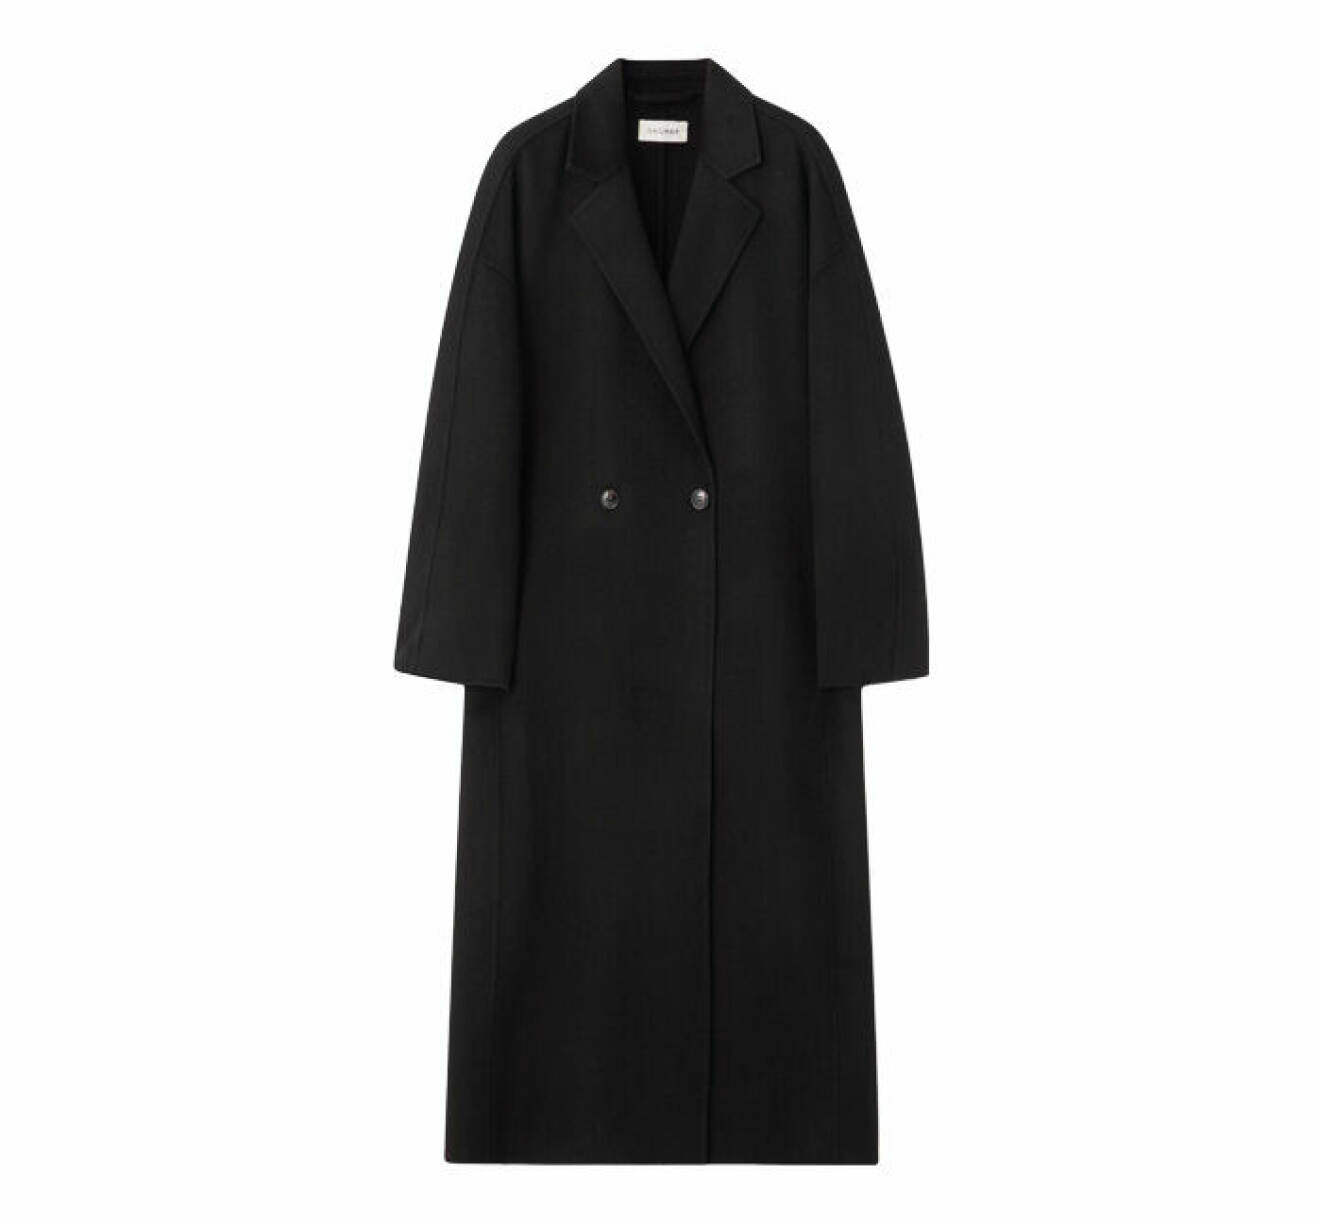 lång kappa i svart nyans gjord i dubbelvävt ull med knappstängning från Dagmar